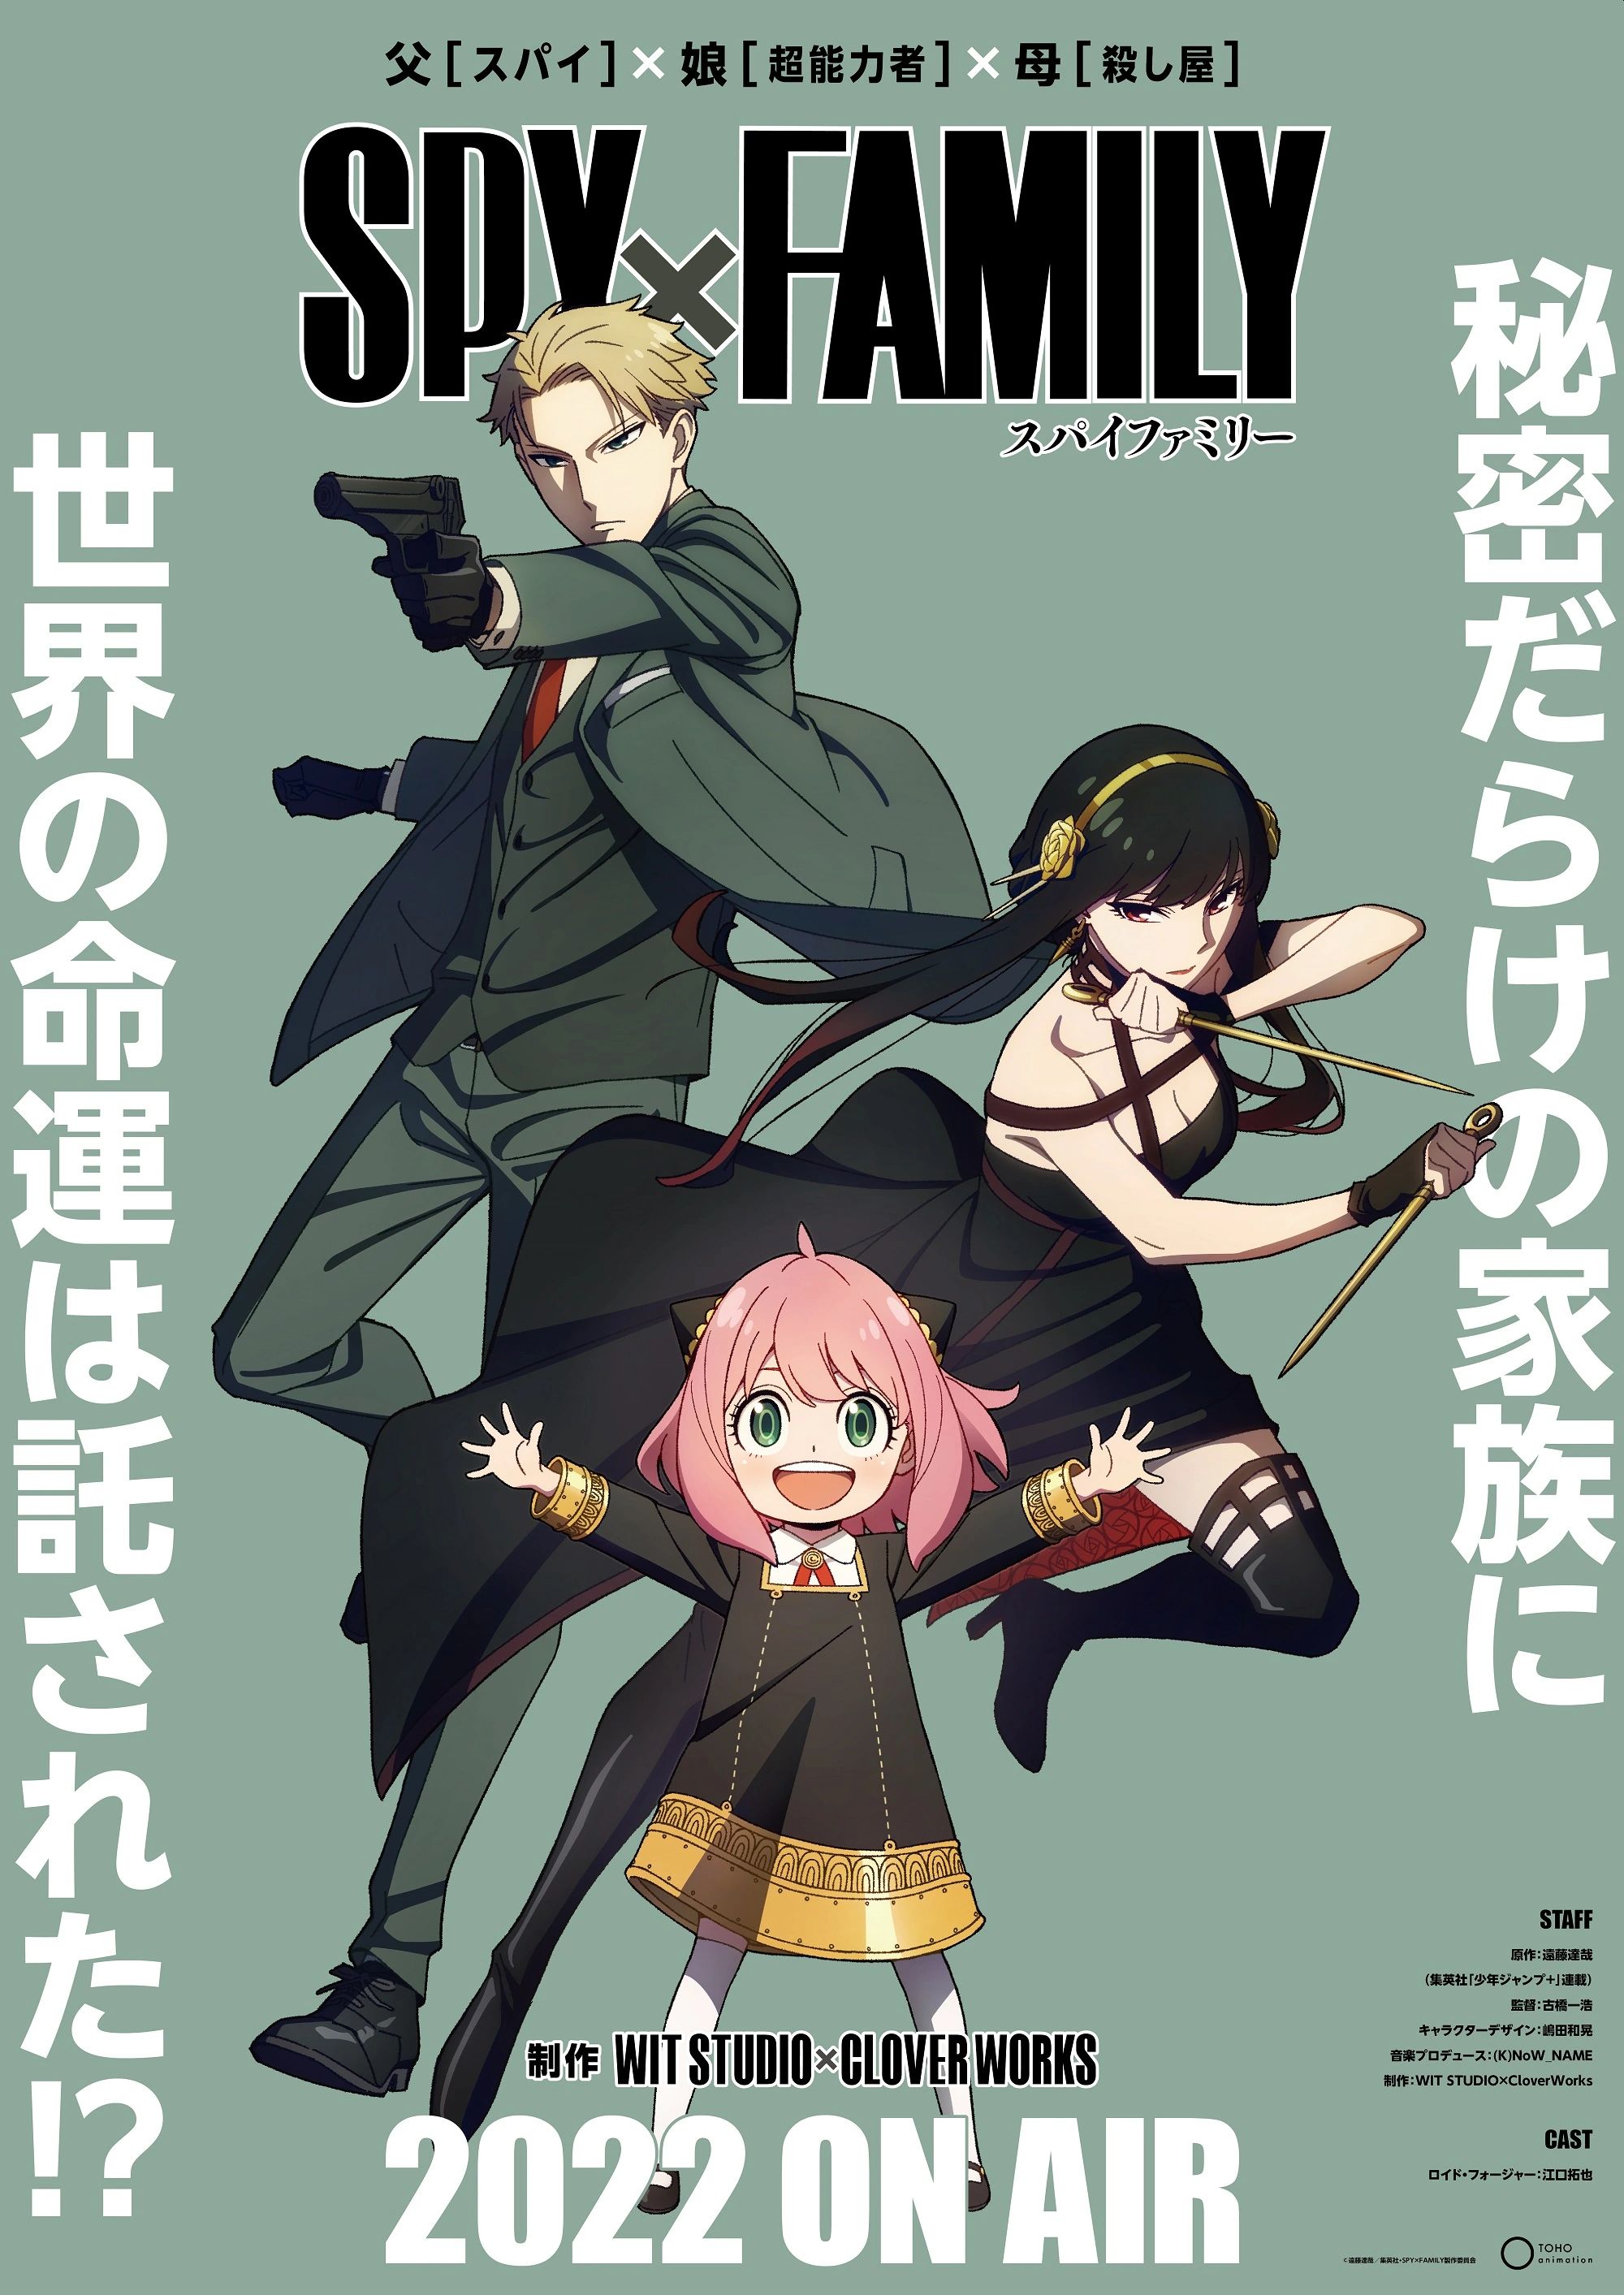 Ver spy x family anime